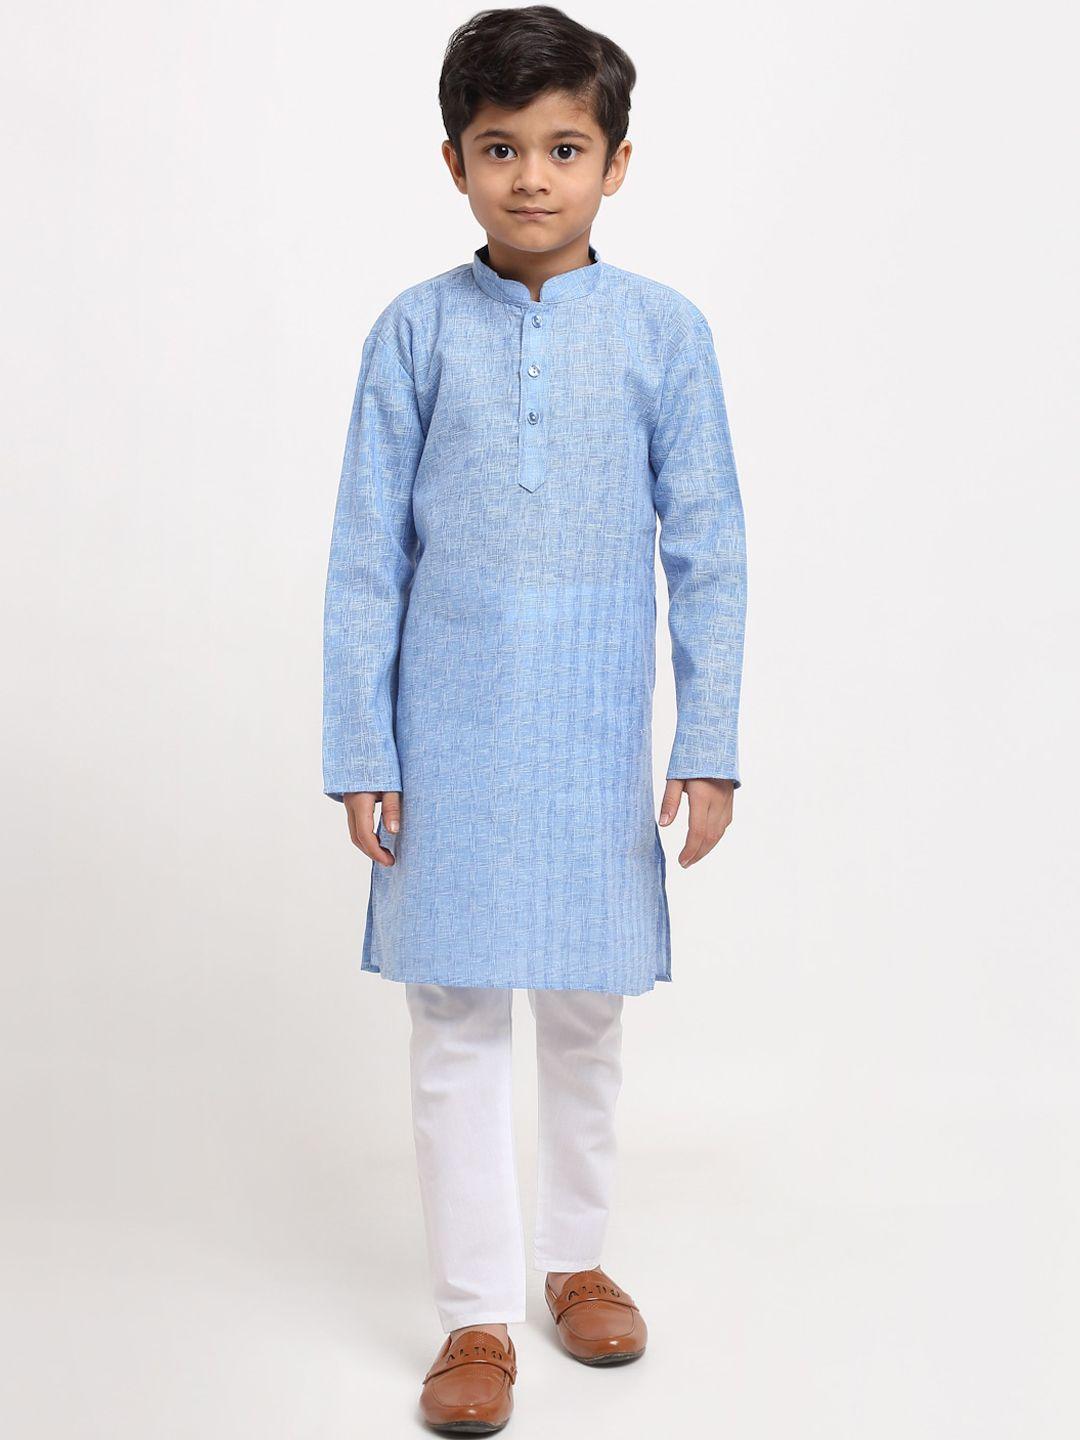 kraft india boys blue regular pure cotton kurta with pyjamas